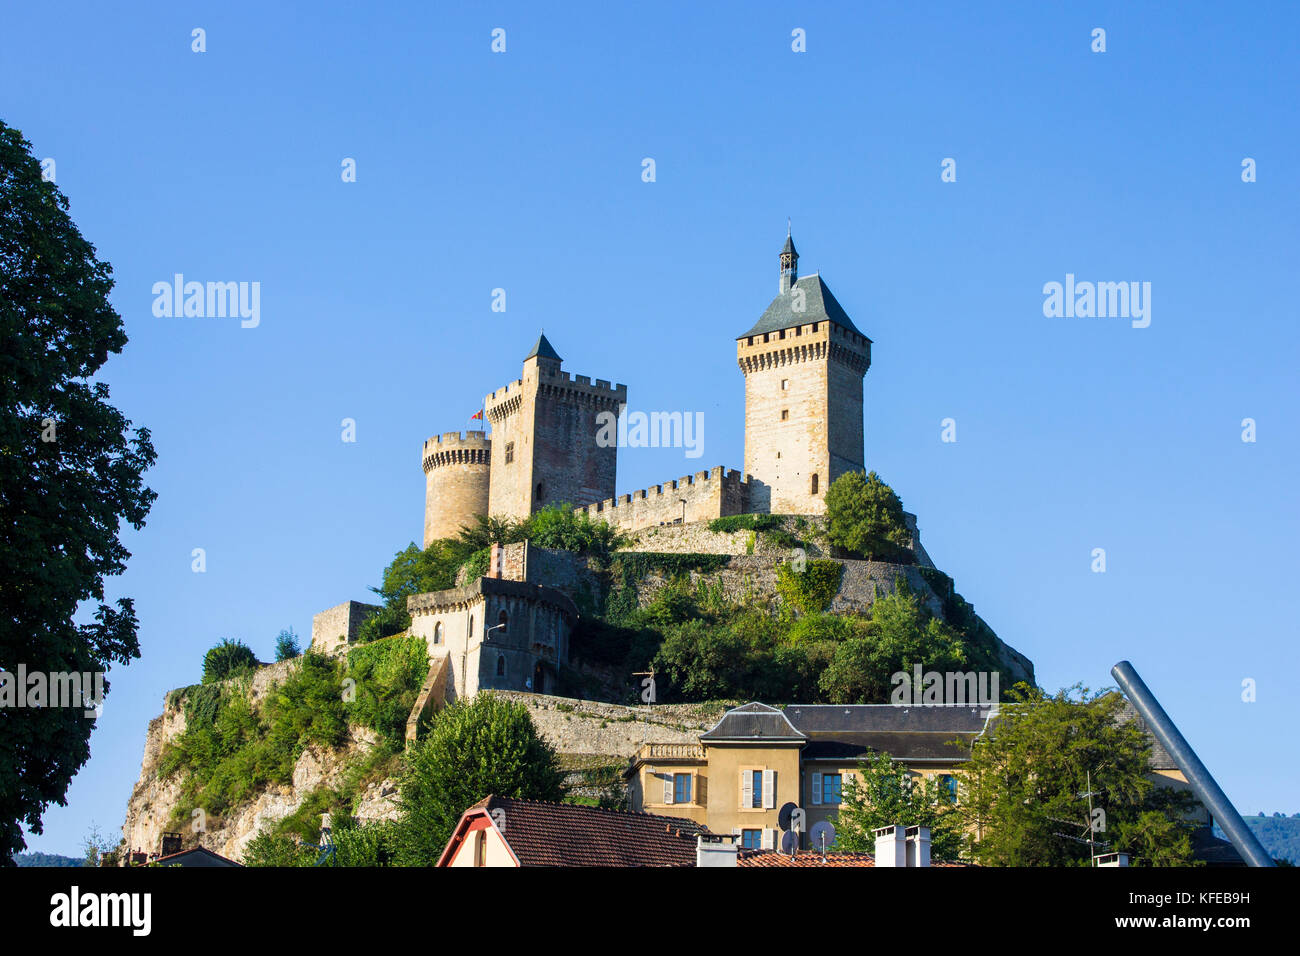 Le château de Foix, un château qui domine la ville de Foix dans le département français de l'Ariège Banque D'Images